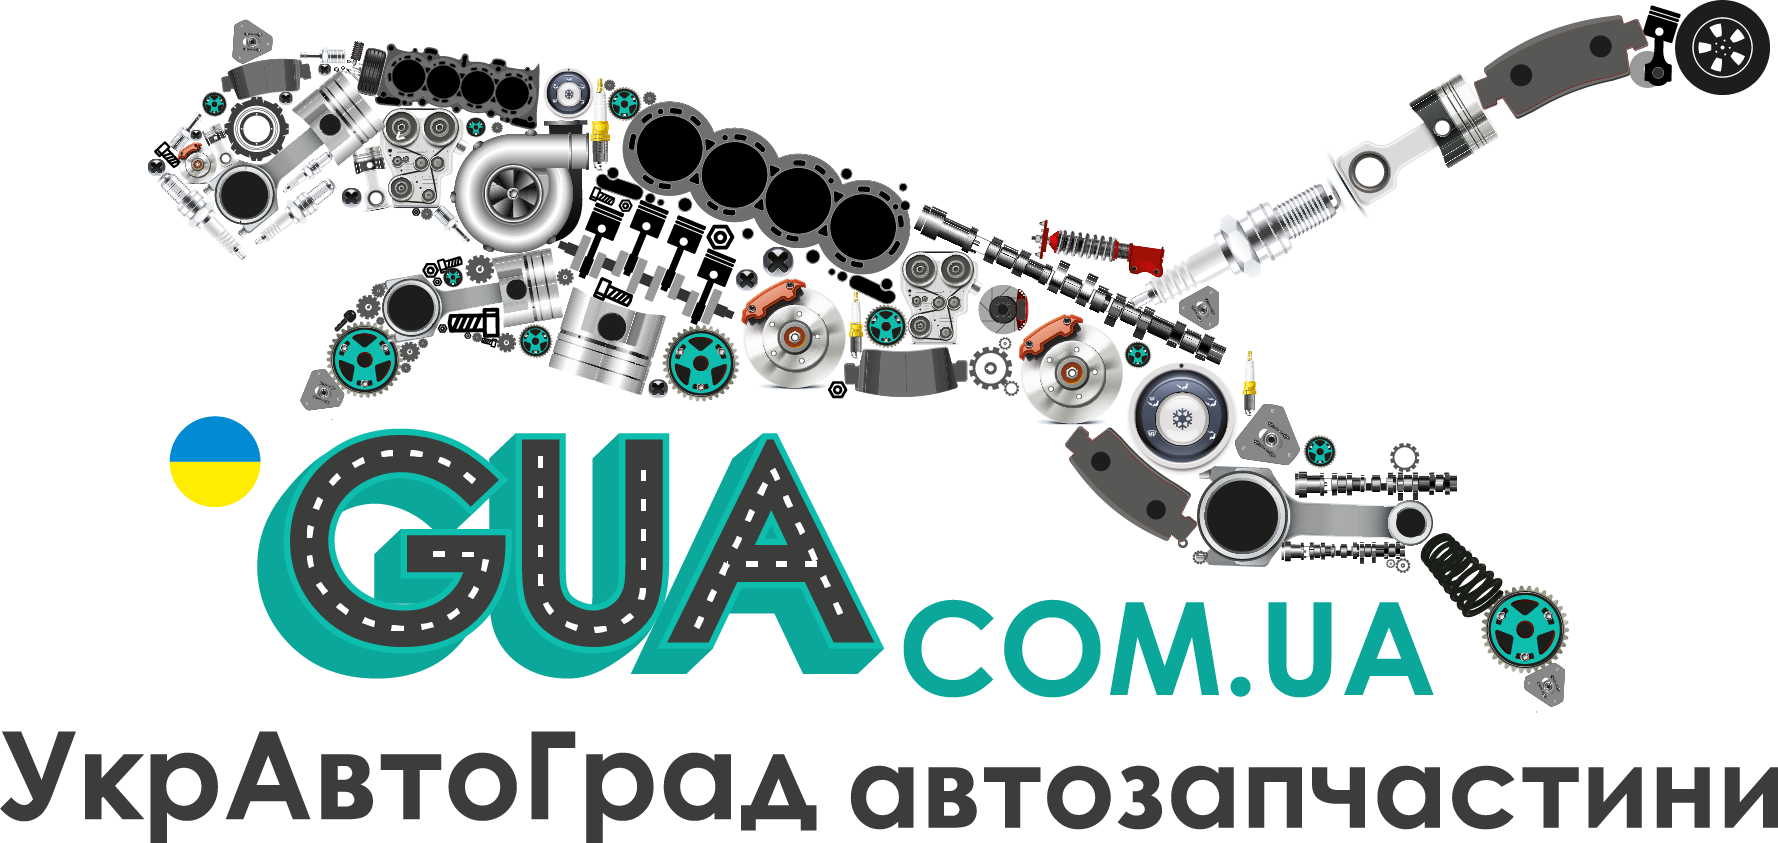 Логотип "GUA.com.ua"